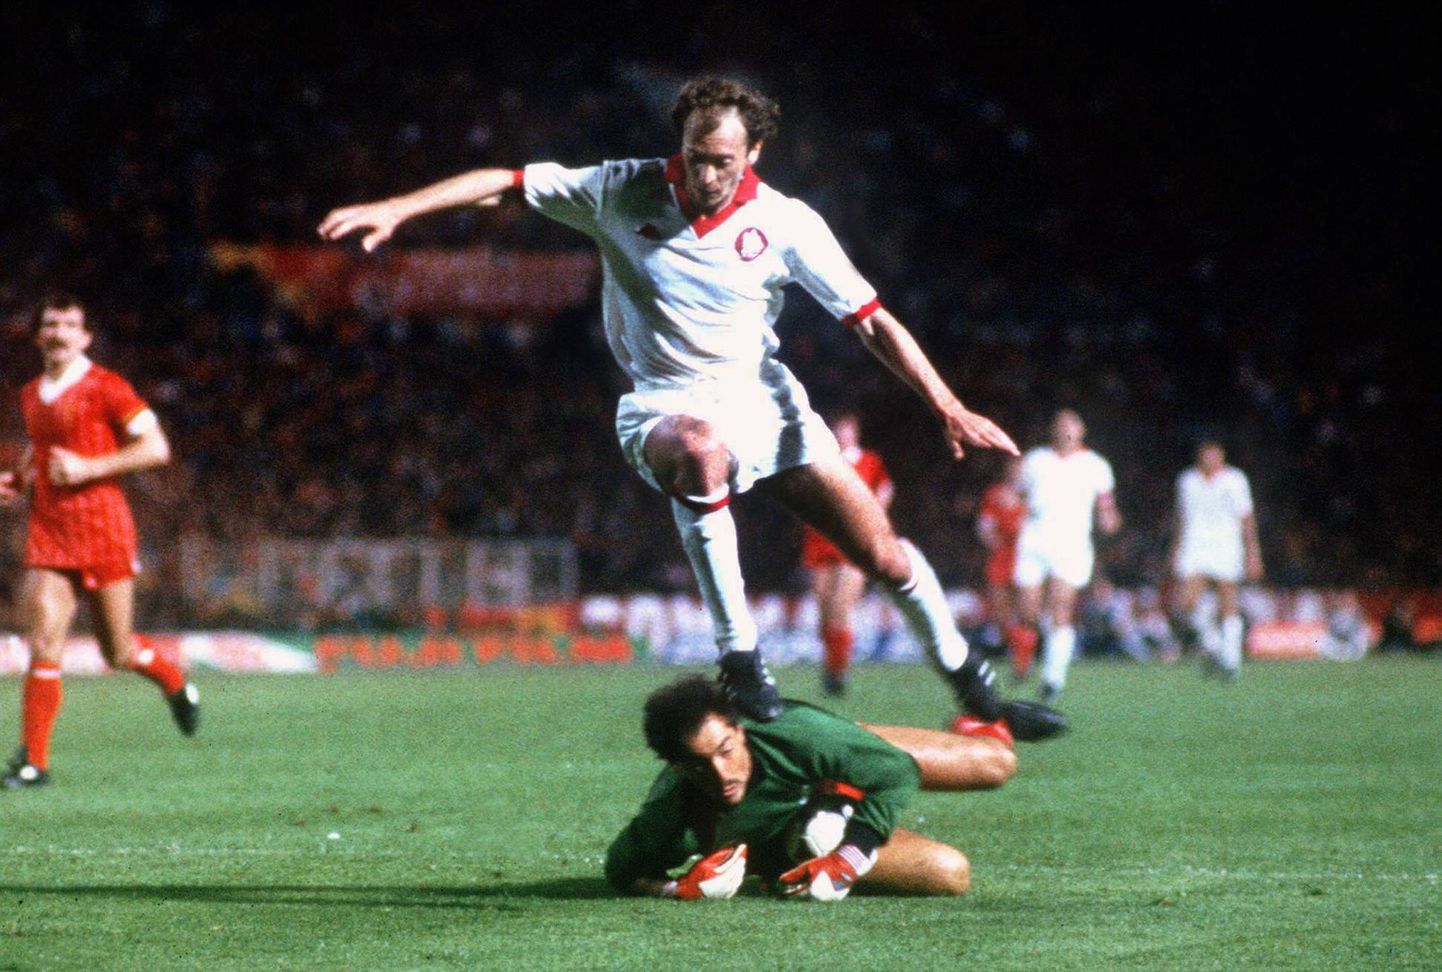 Kas Roma suudab Liverpooli-nimelise tõkke ületada? Teha tuleb märksa kõrgem hüpe kui see, mille sooritas 1984. aasta Euroopa Karika finaali käigus Bruce Grobbelaari kohale kerkinud Paulo Roberto Falcão.